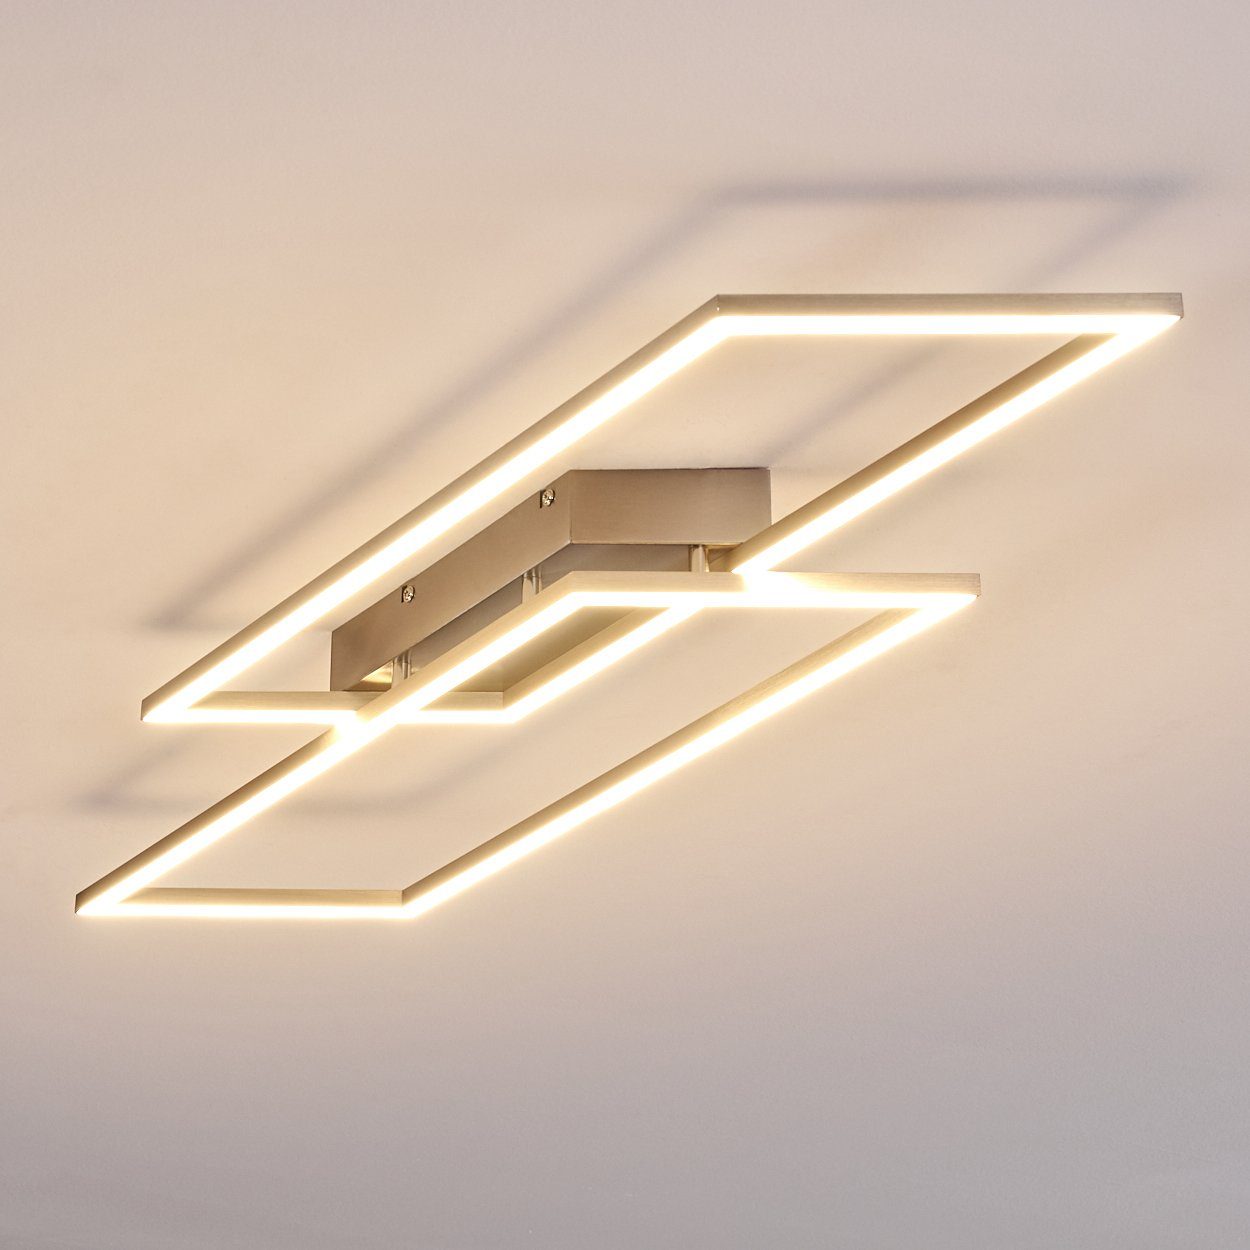 LED Design dimmbare Wohn Deckenleuchte hofstein Flur Dielen Lampen Beleuchtung Decken Ess